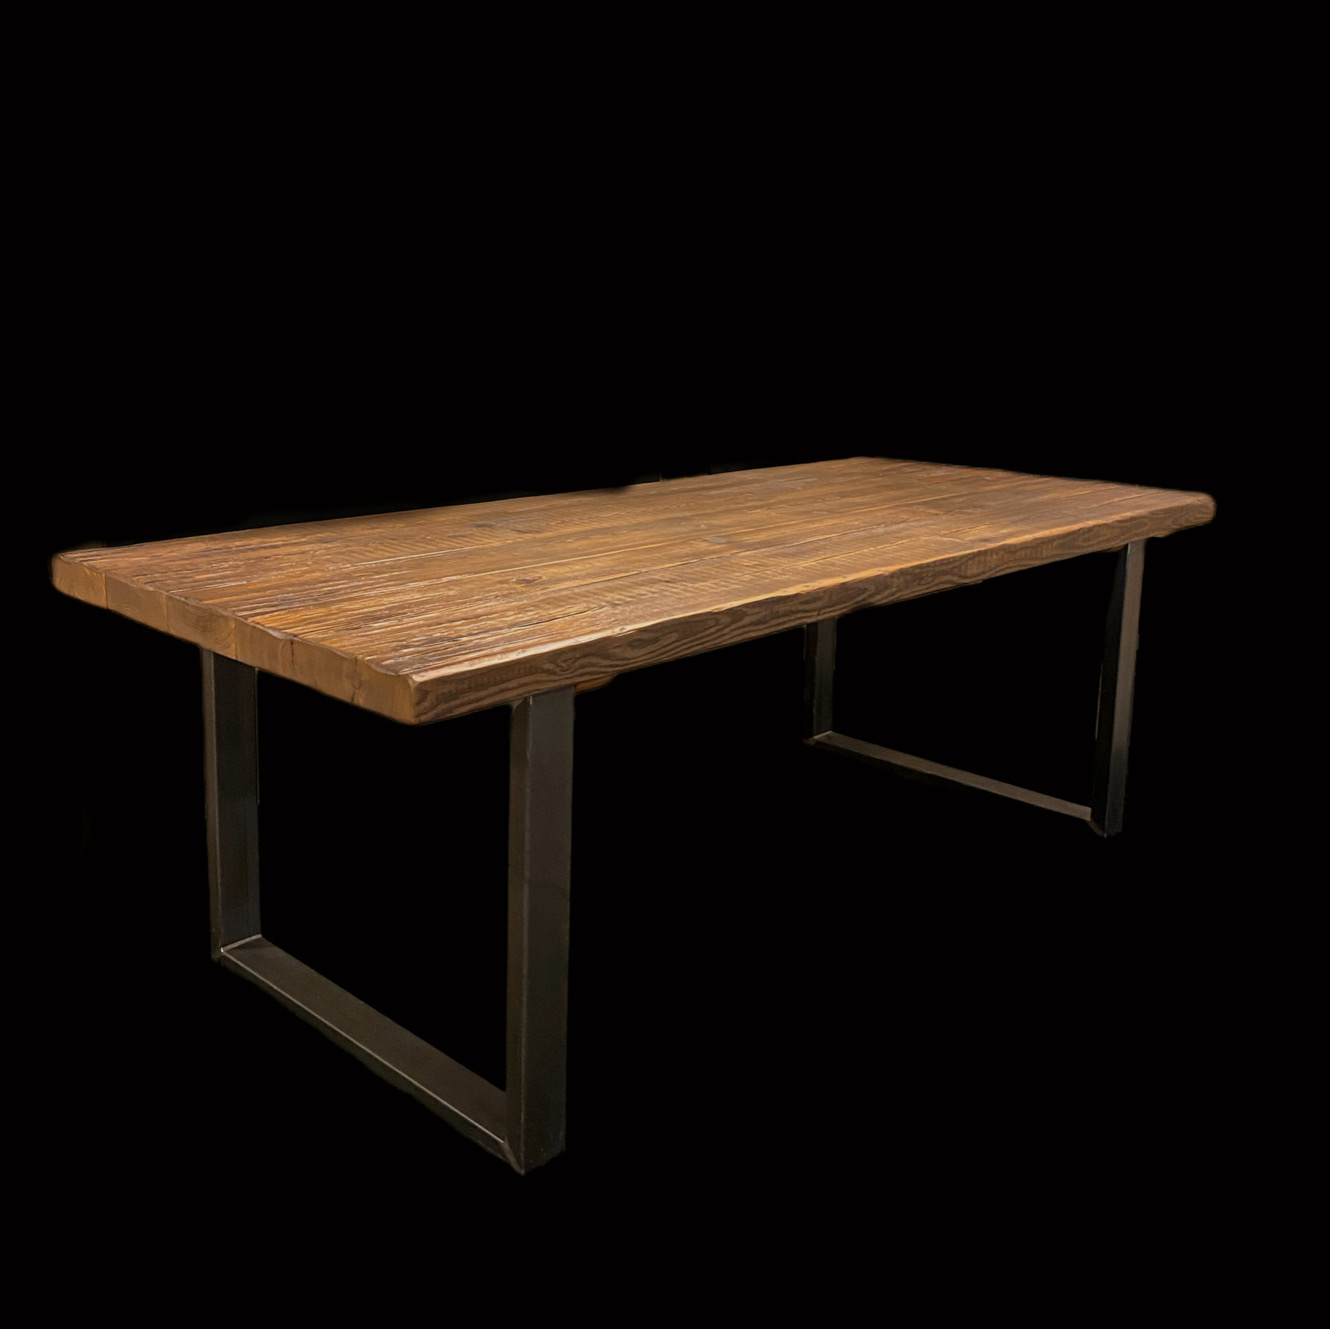 Tavolo scrivania in legno e ferro vintage Fallaci Xlab